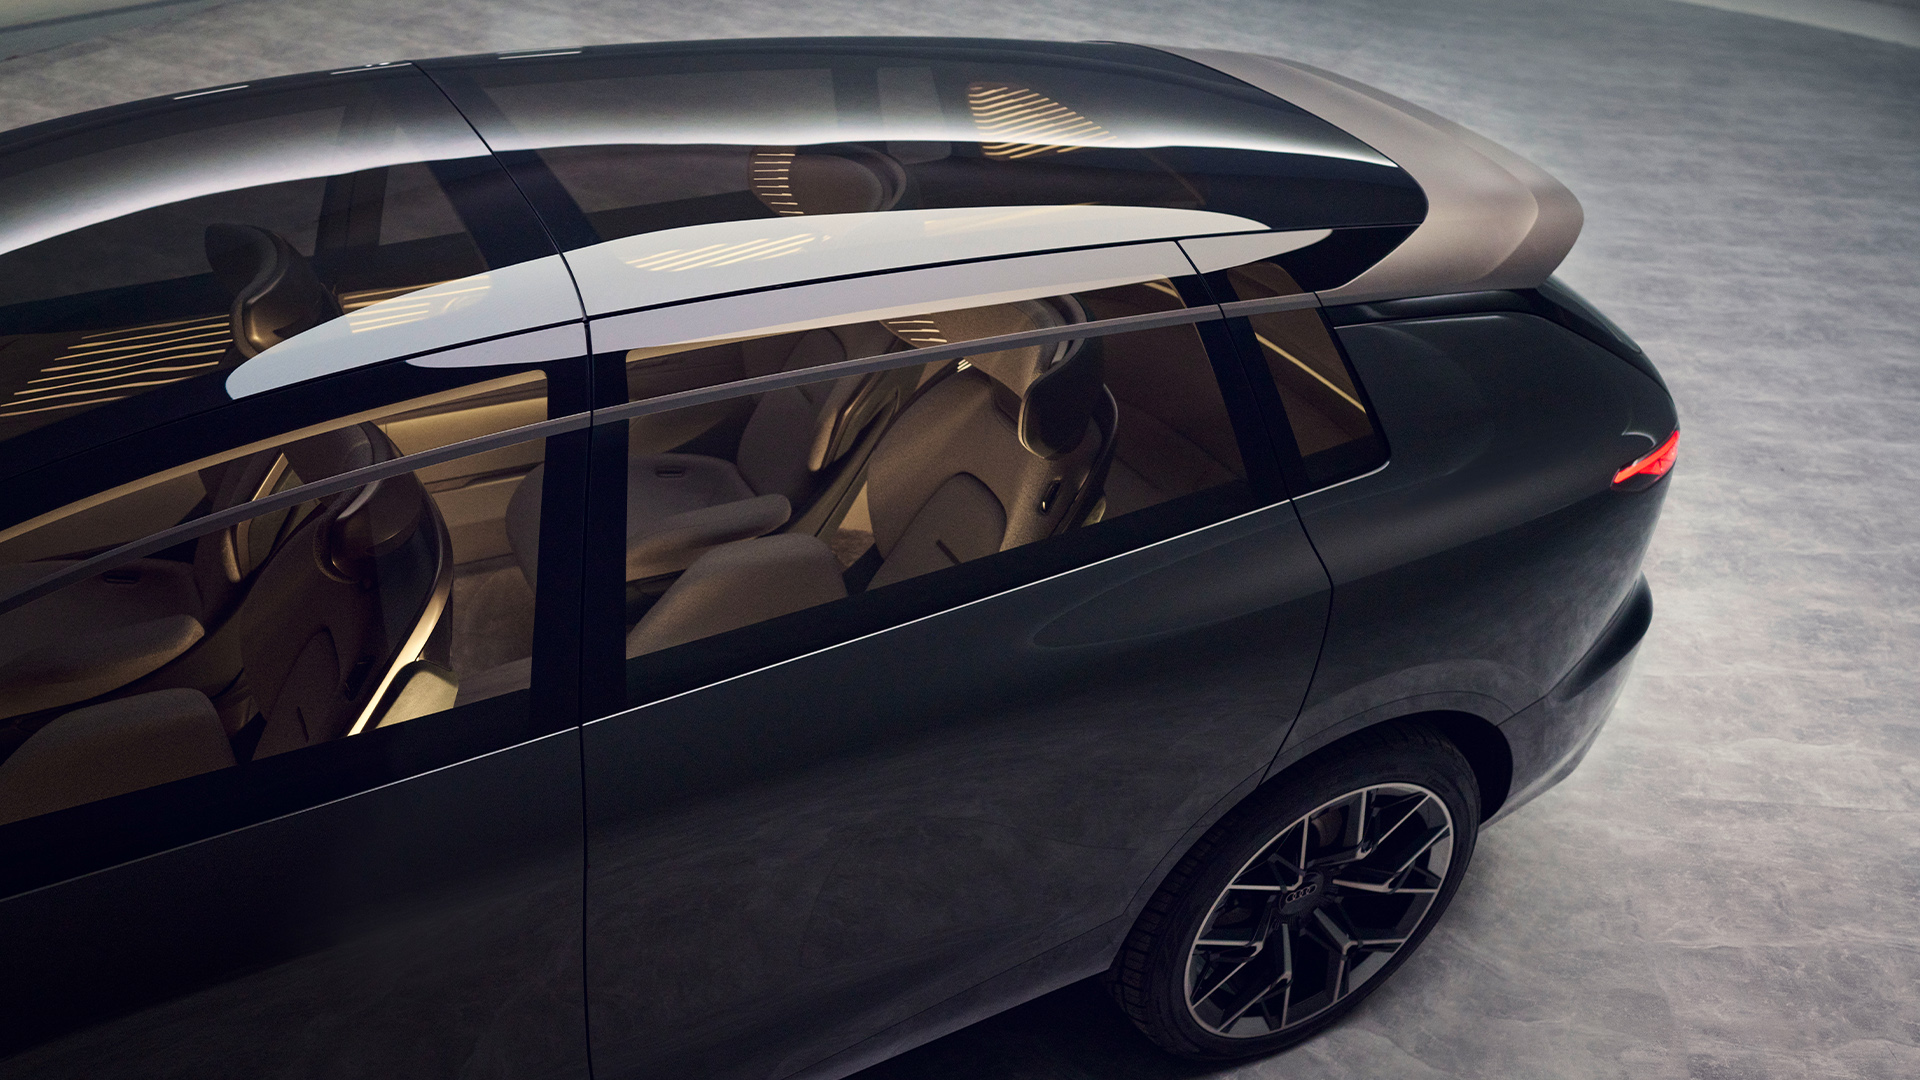 Blick durch das Glasdach in den Innenraum des Audi urbansphere concept.